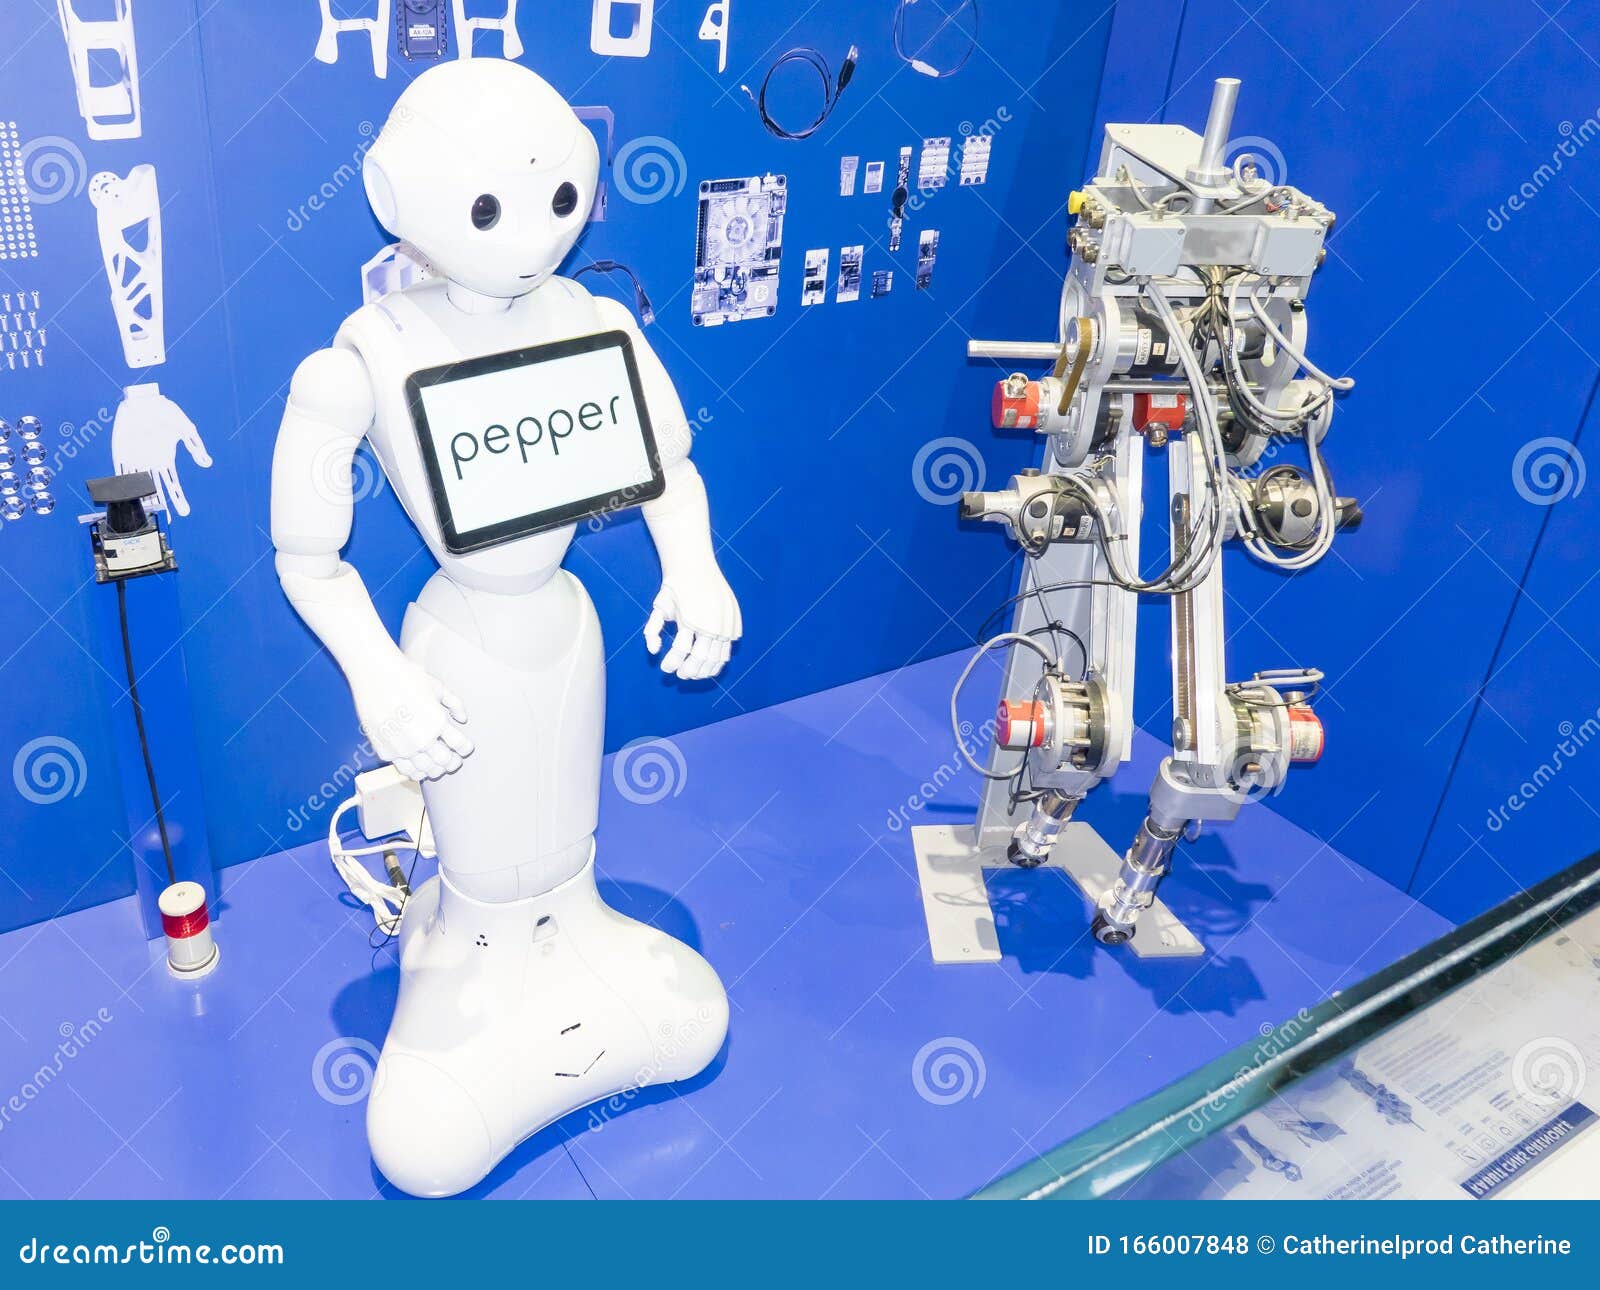 Робот Пеппер. Робот читает эмоции. Итальянские роботы. Робот лого.